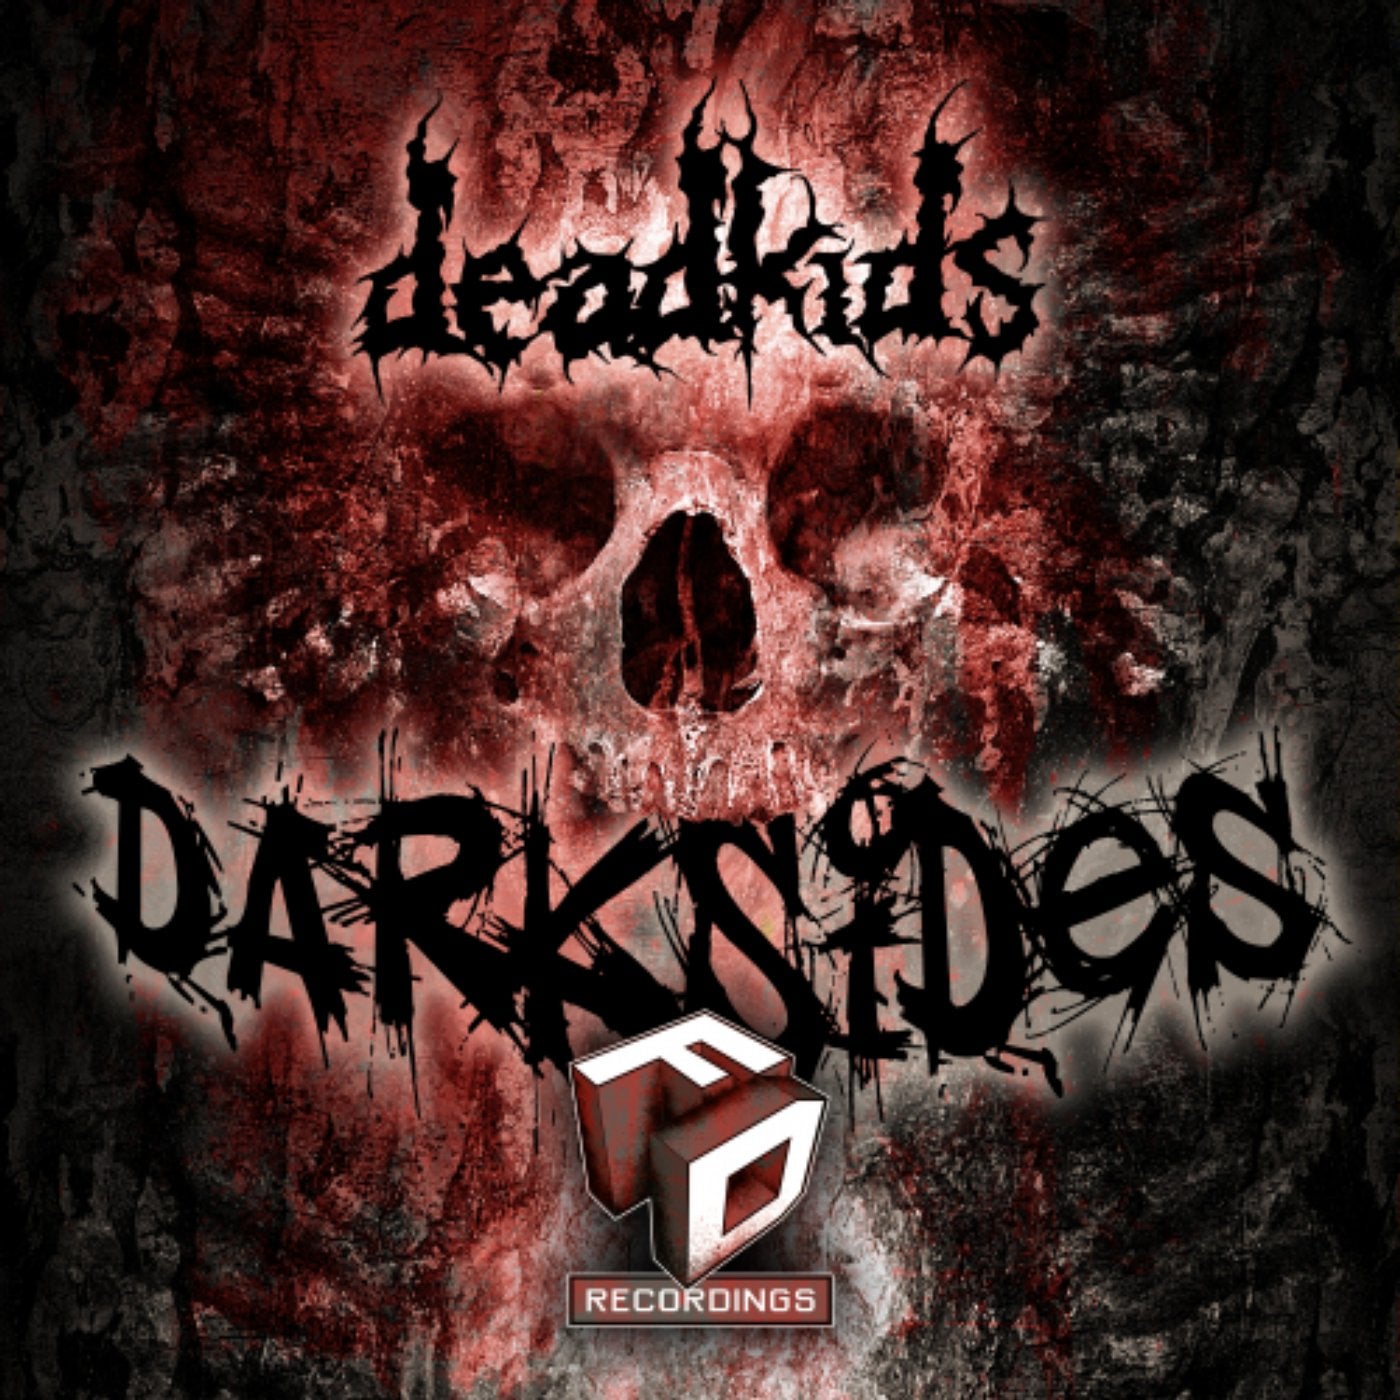 Darksides